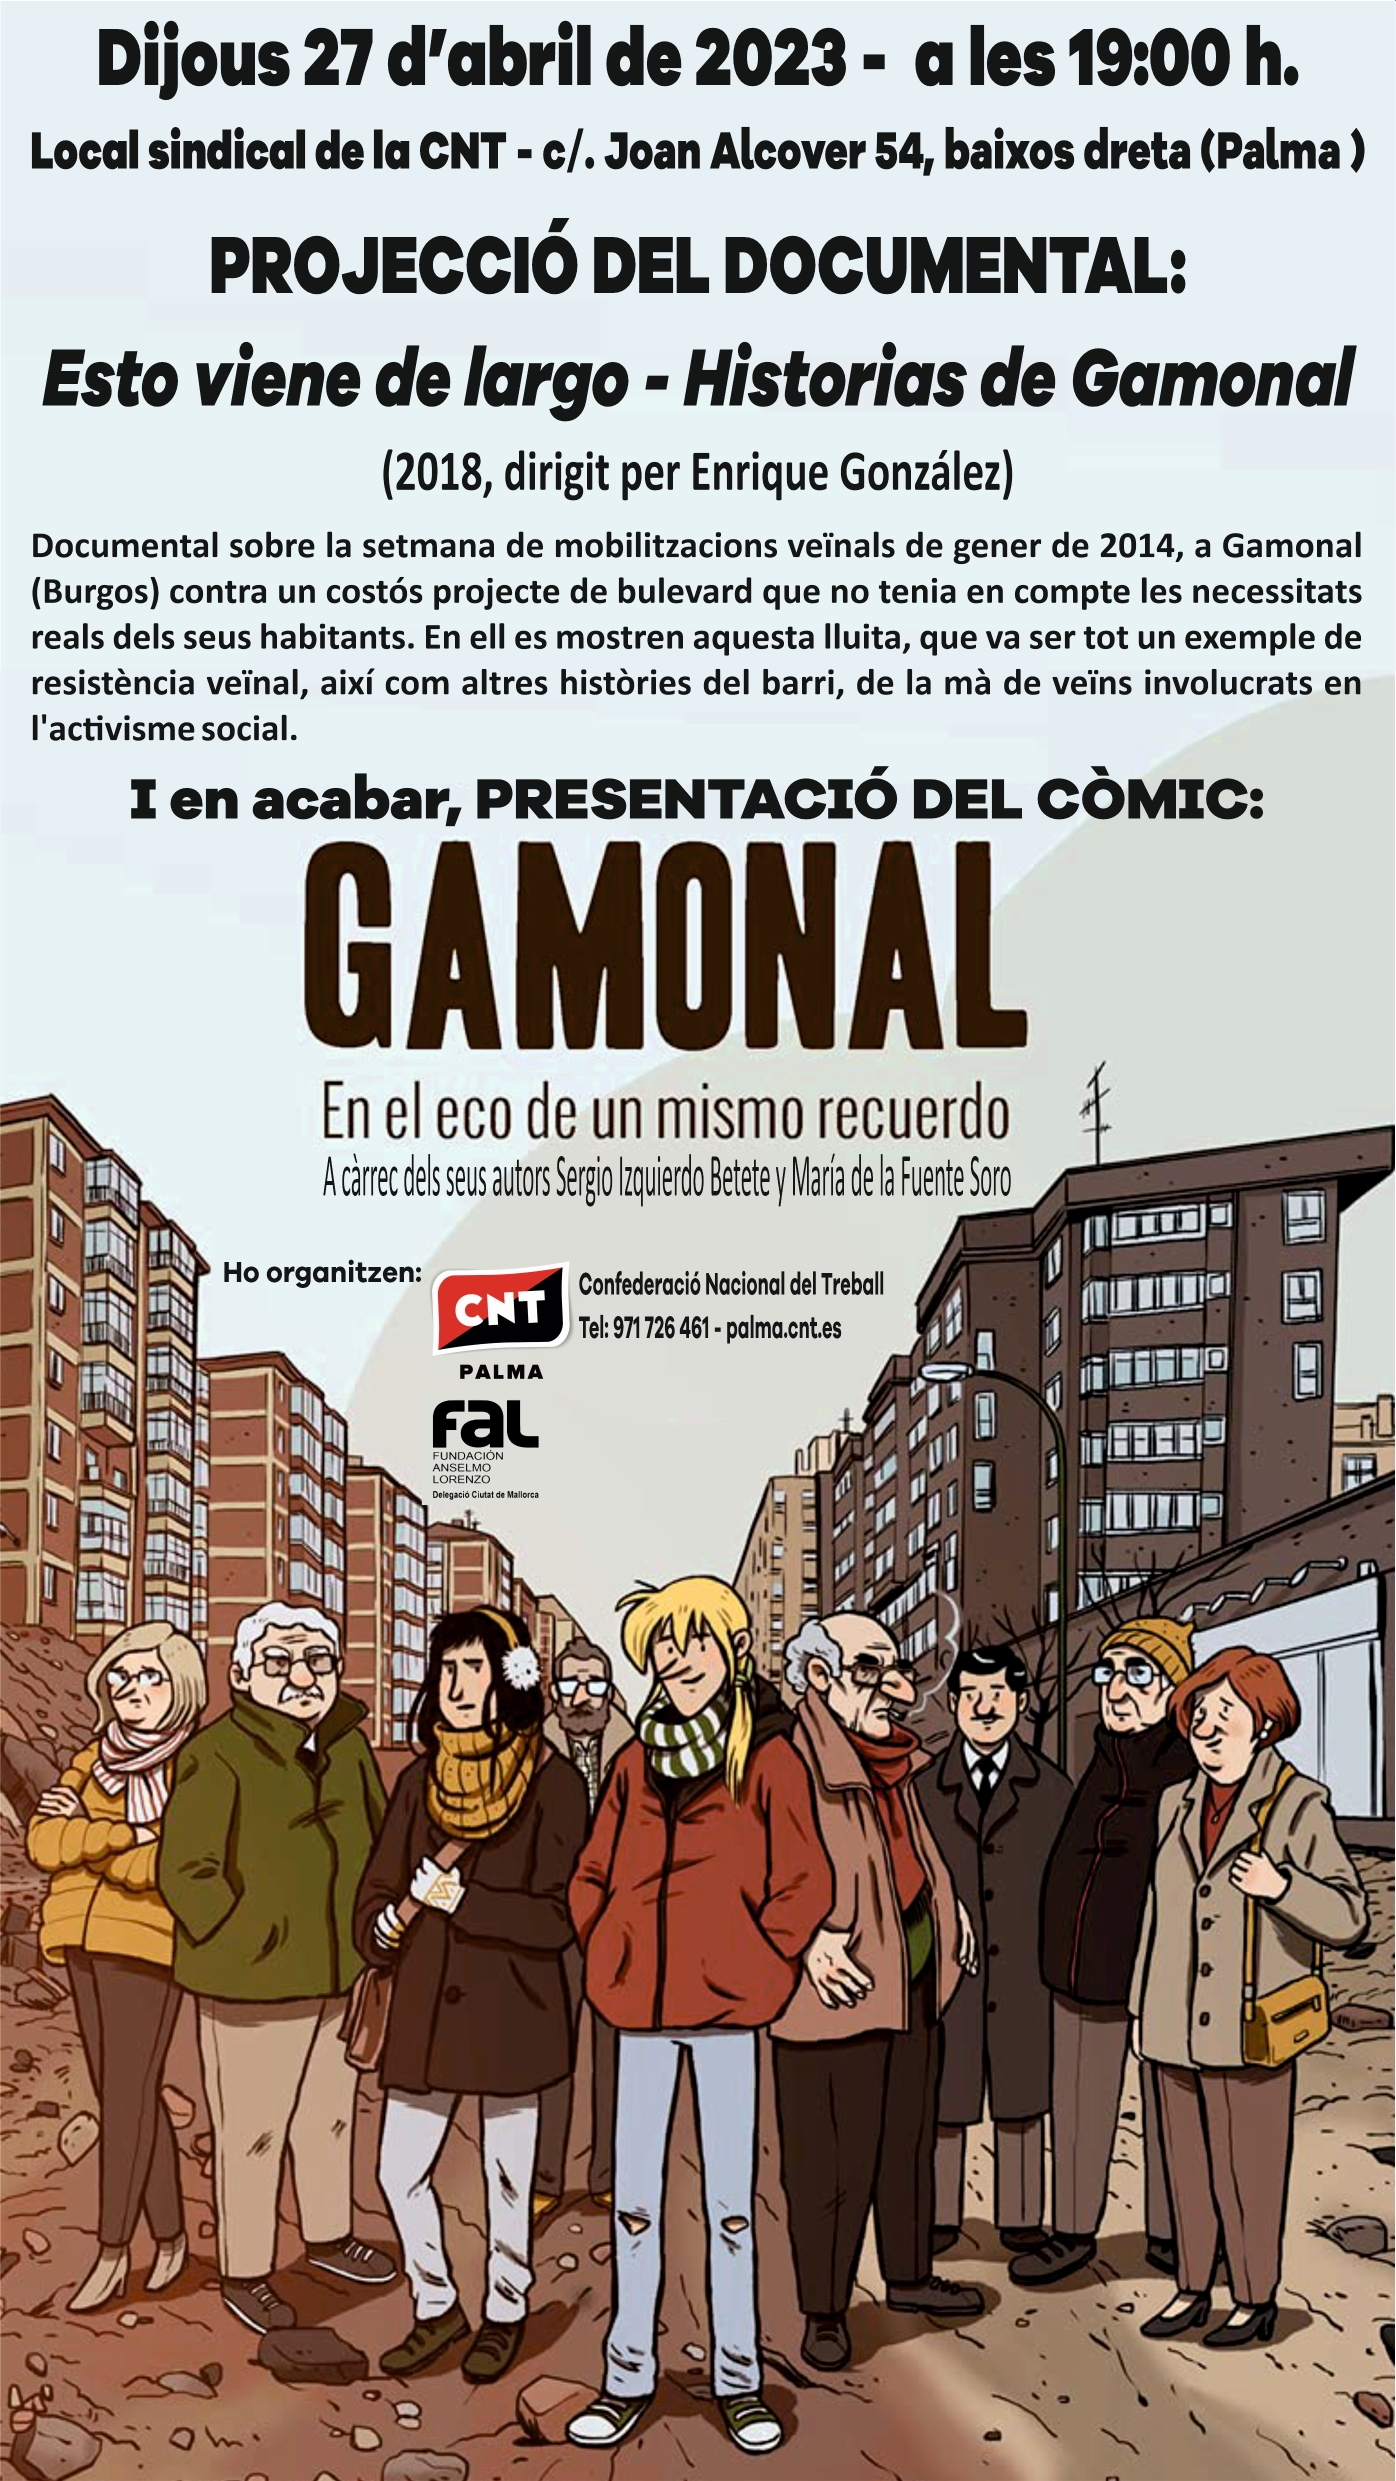 Projecció del documental: “Esto viene de largo – Historias de Gamonal”. I presentació del còmic: “Gamonal. En el eco de un mismo recuerdo.”